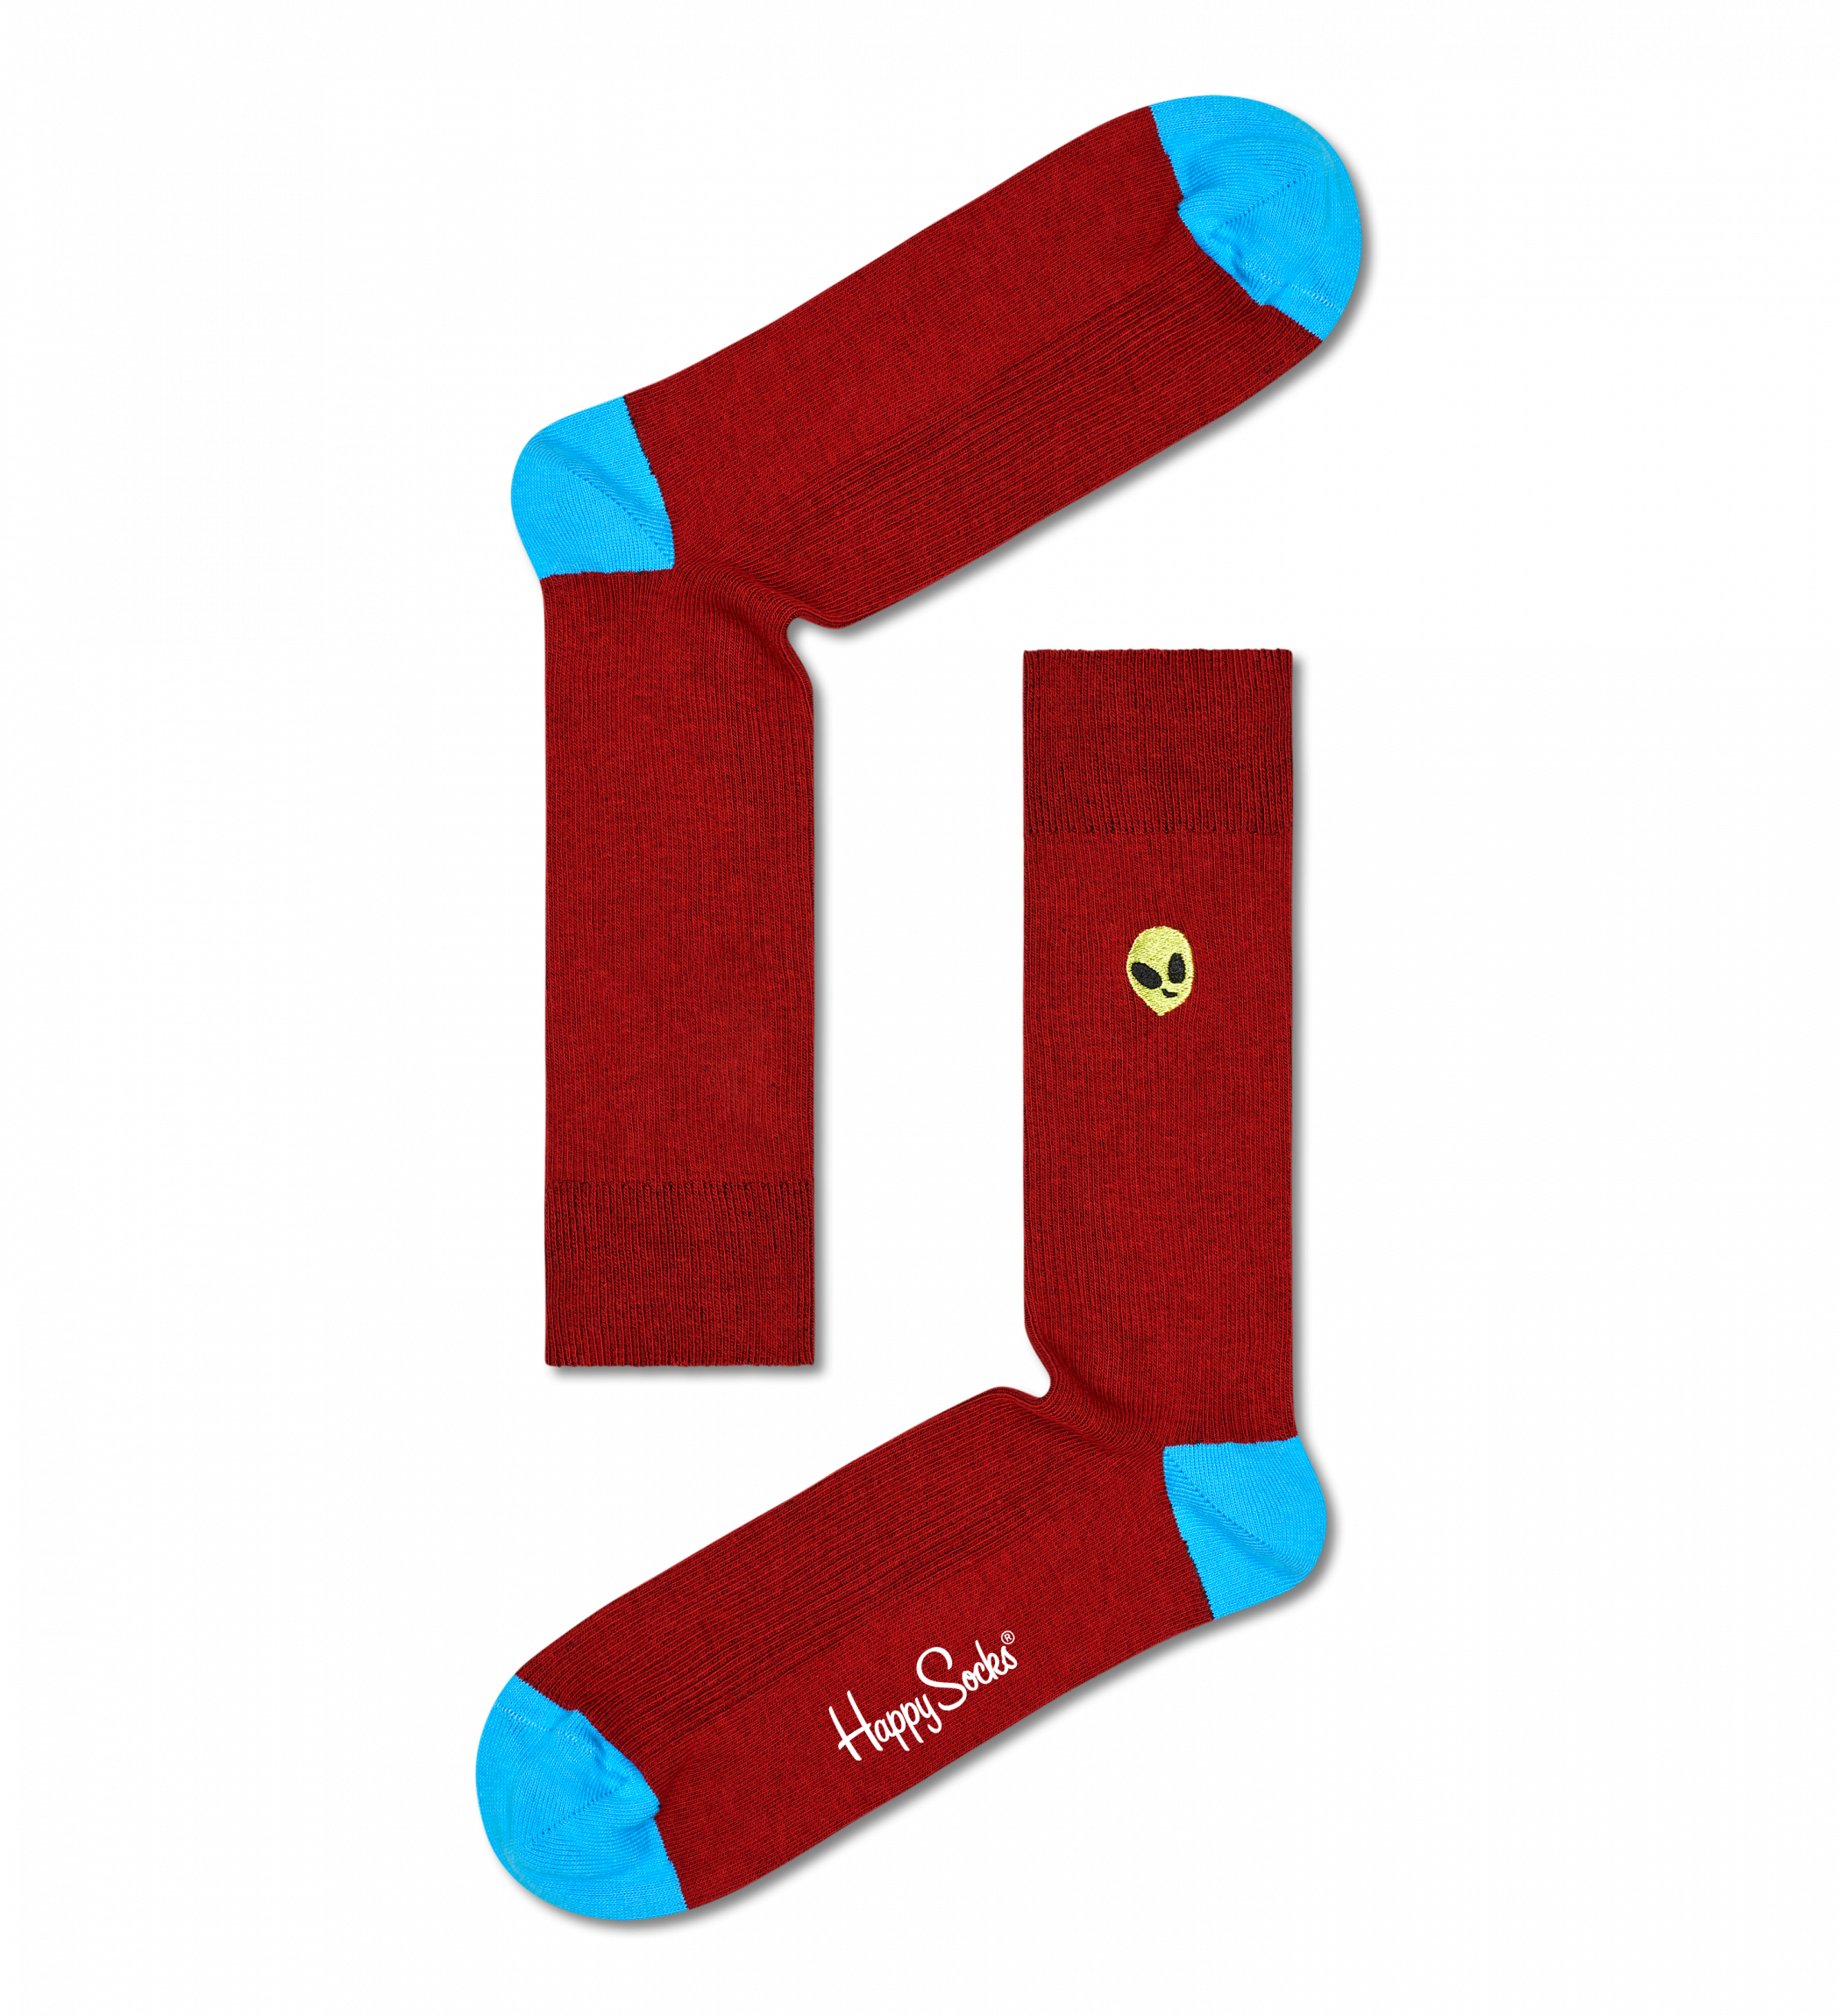 Vínové ponožky Happy Socks s vyšitým mimozemšťanem, vzor Alien